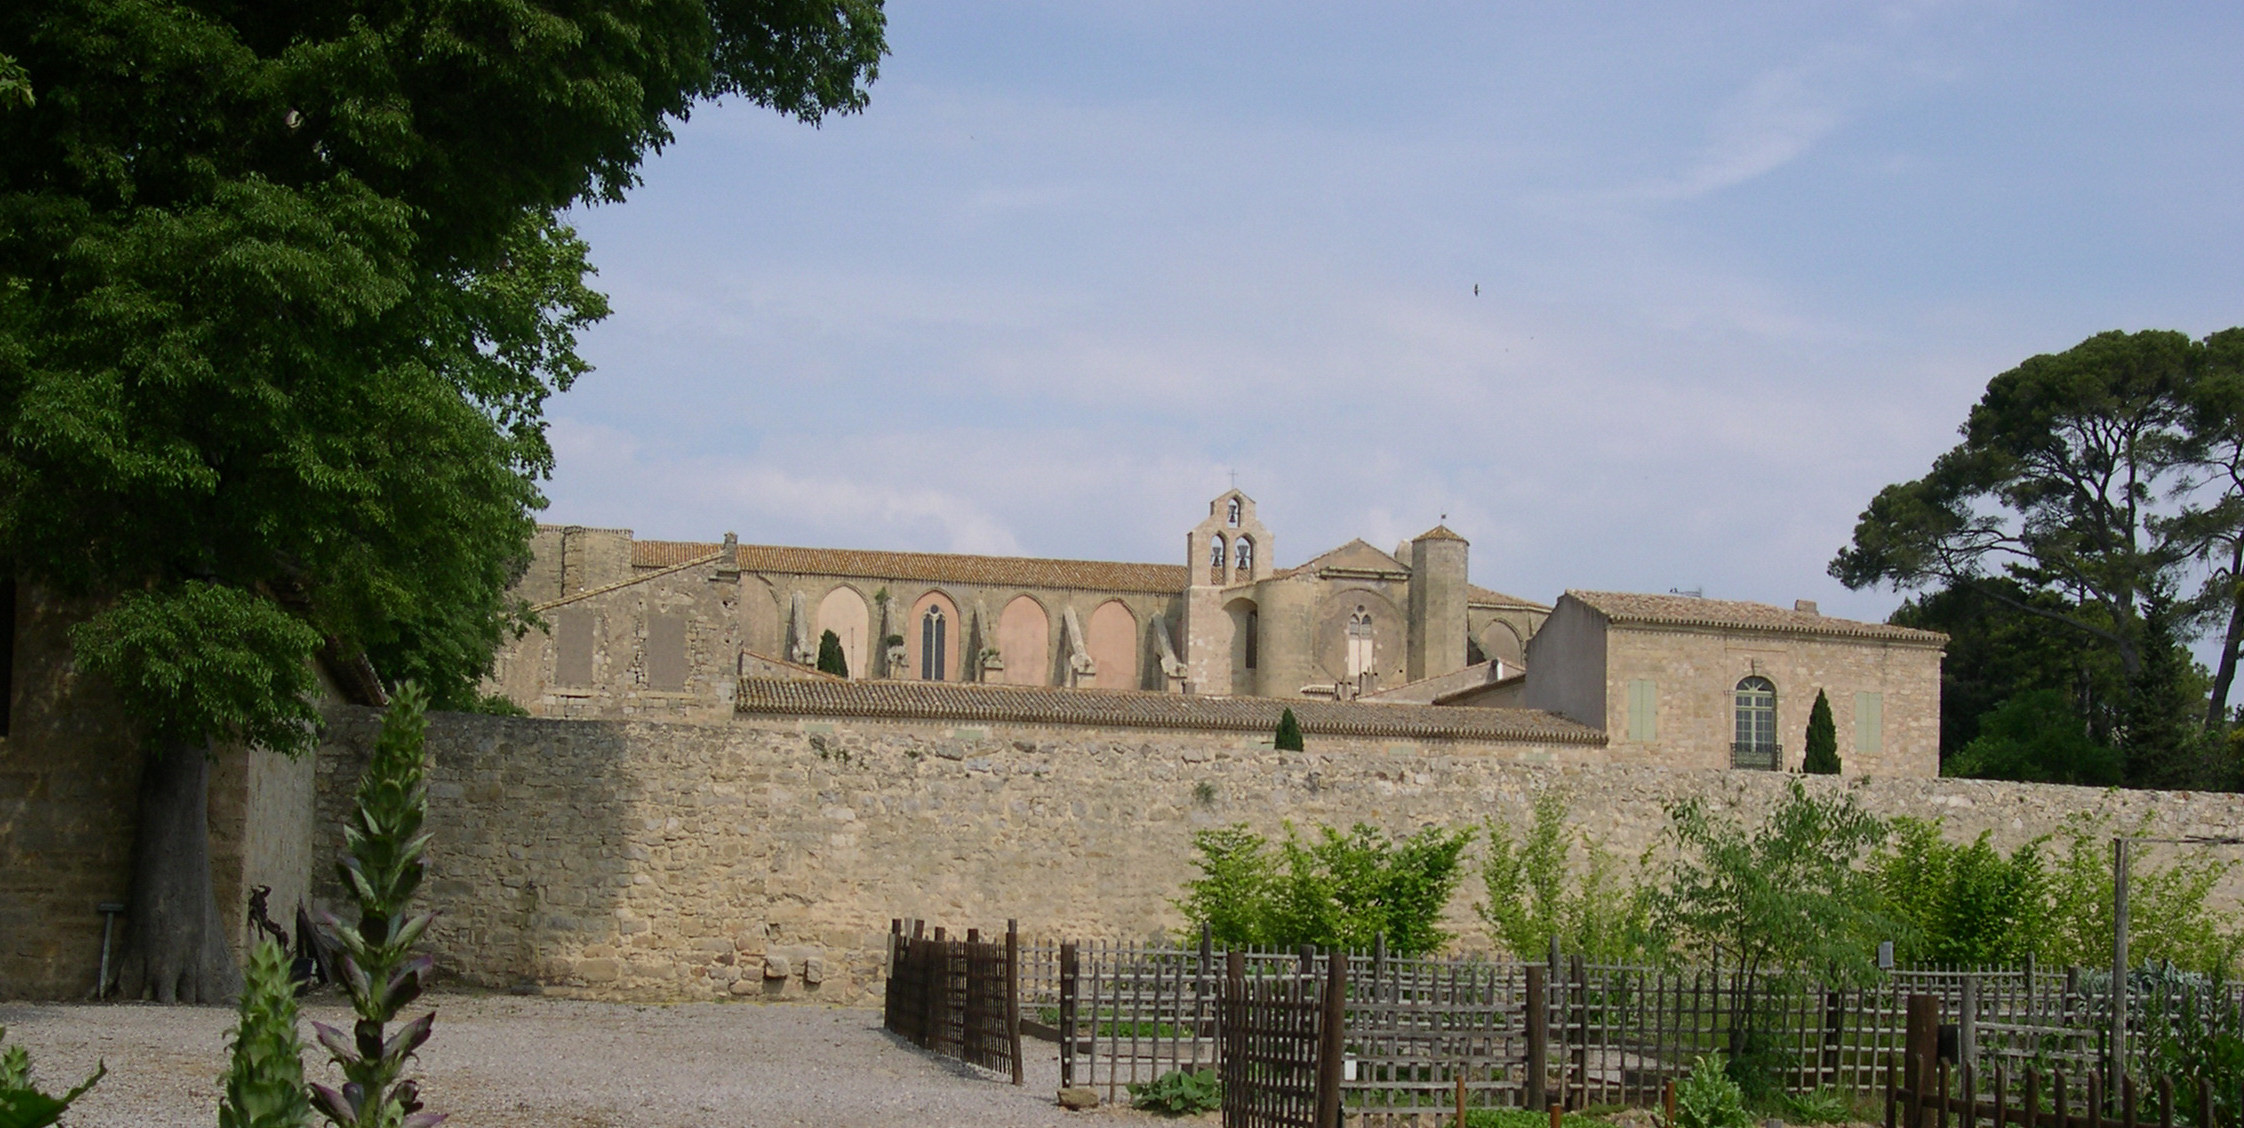 De kelder in deze abdij ligt helemaal vol met wijn en dus kan het peloton hier prima een tussenstopje maken (Foto: WikiCommons)